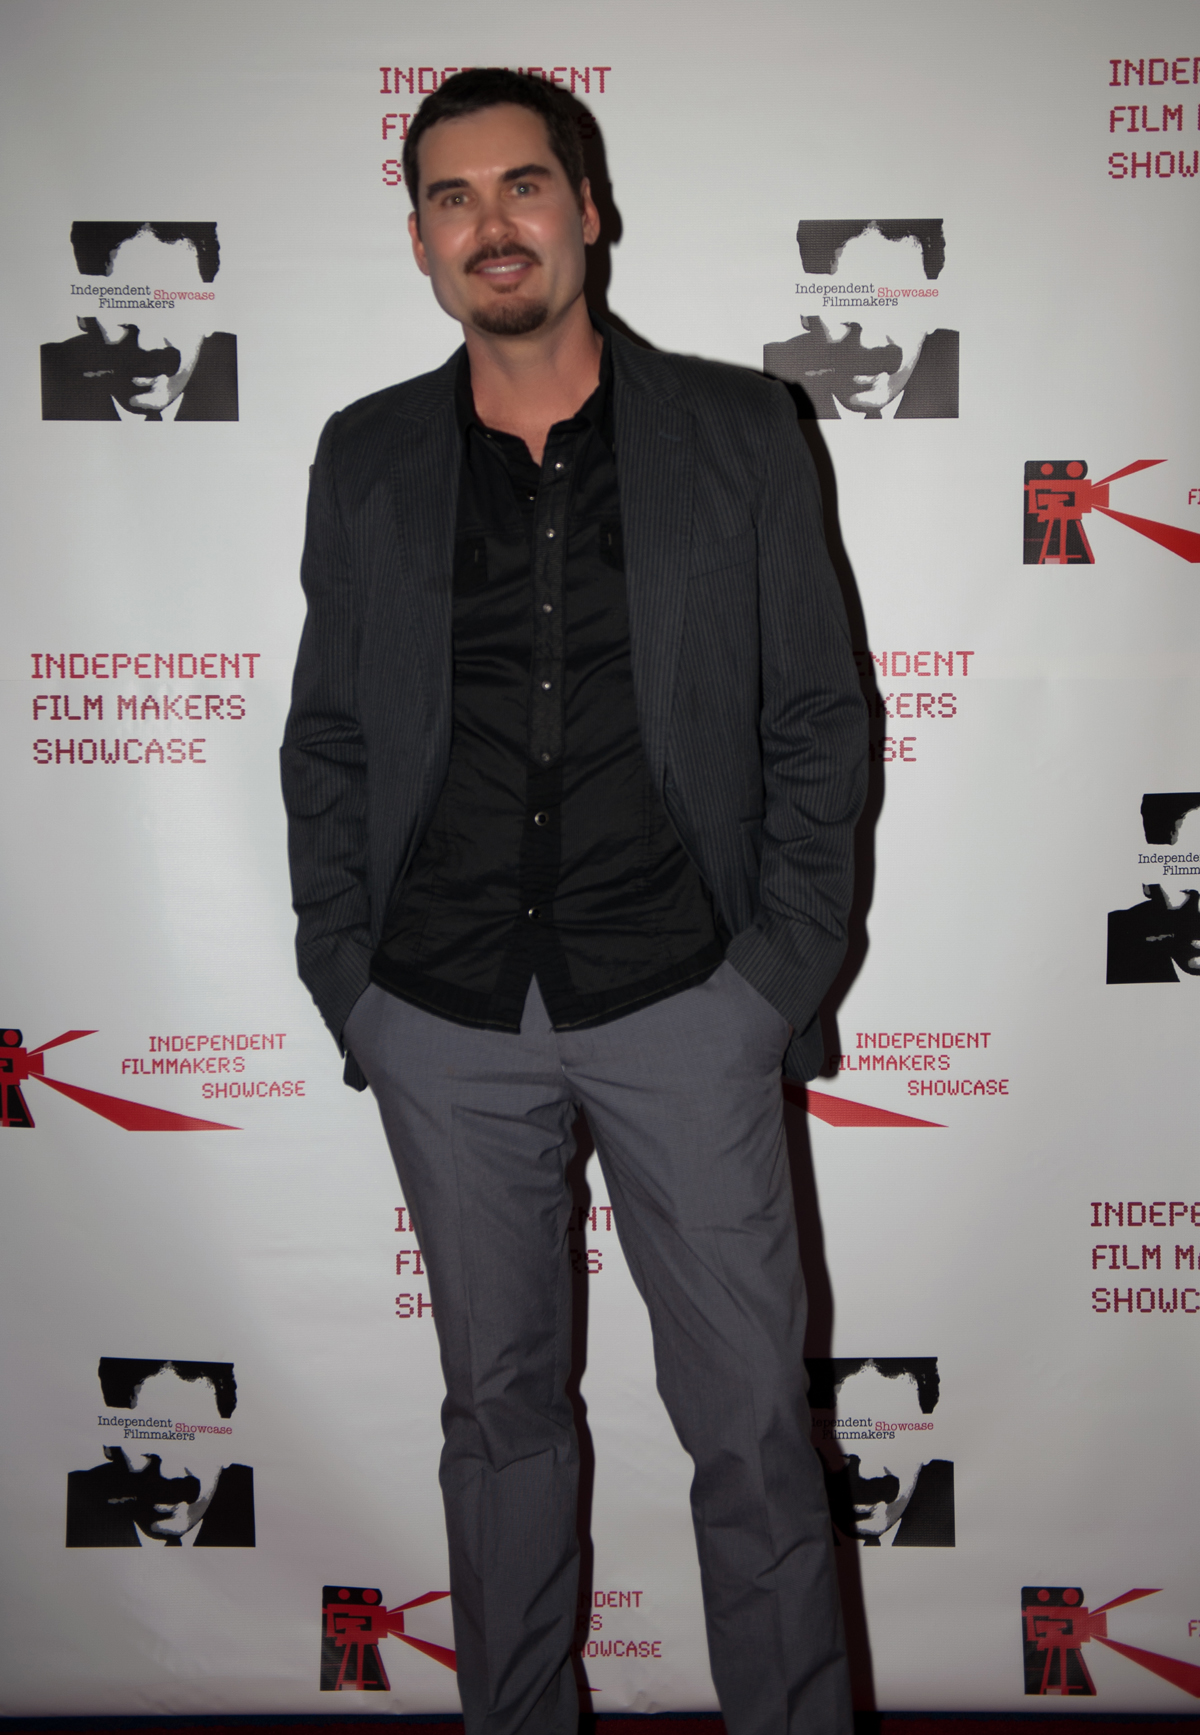 Matthew at the IFS Film Festival.